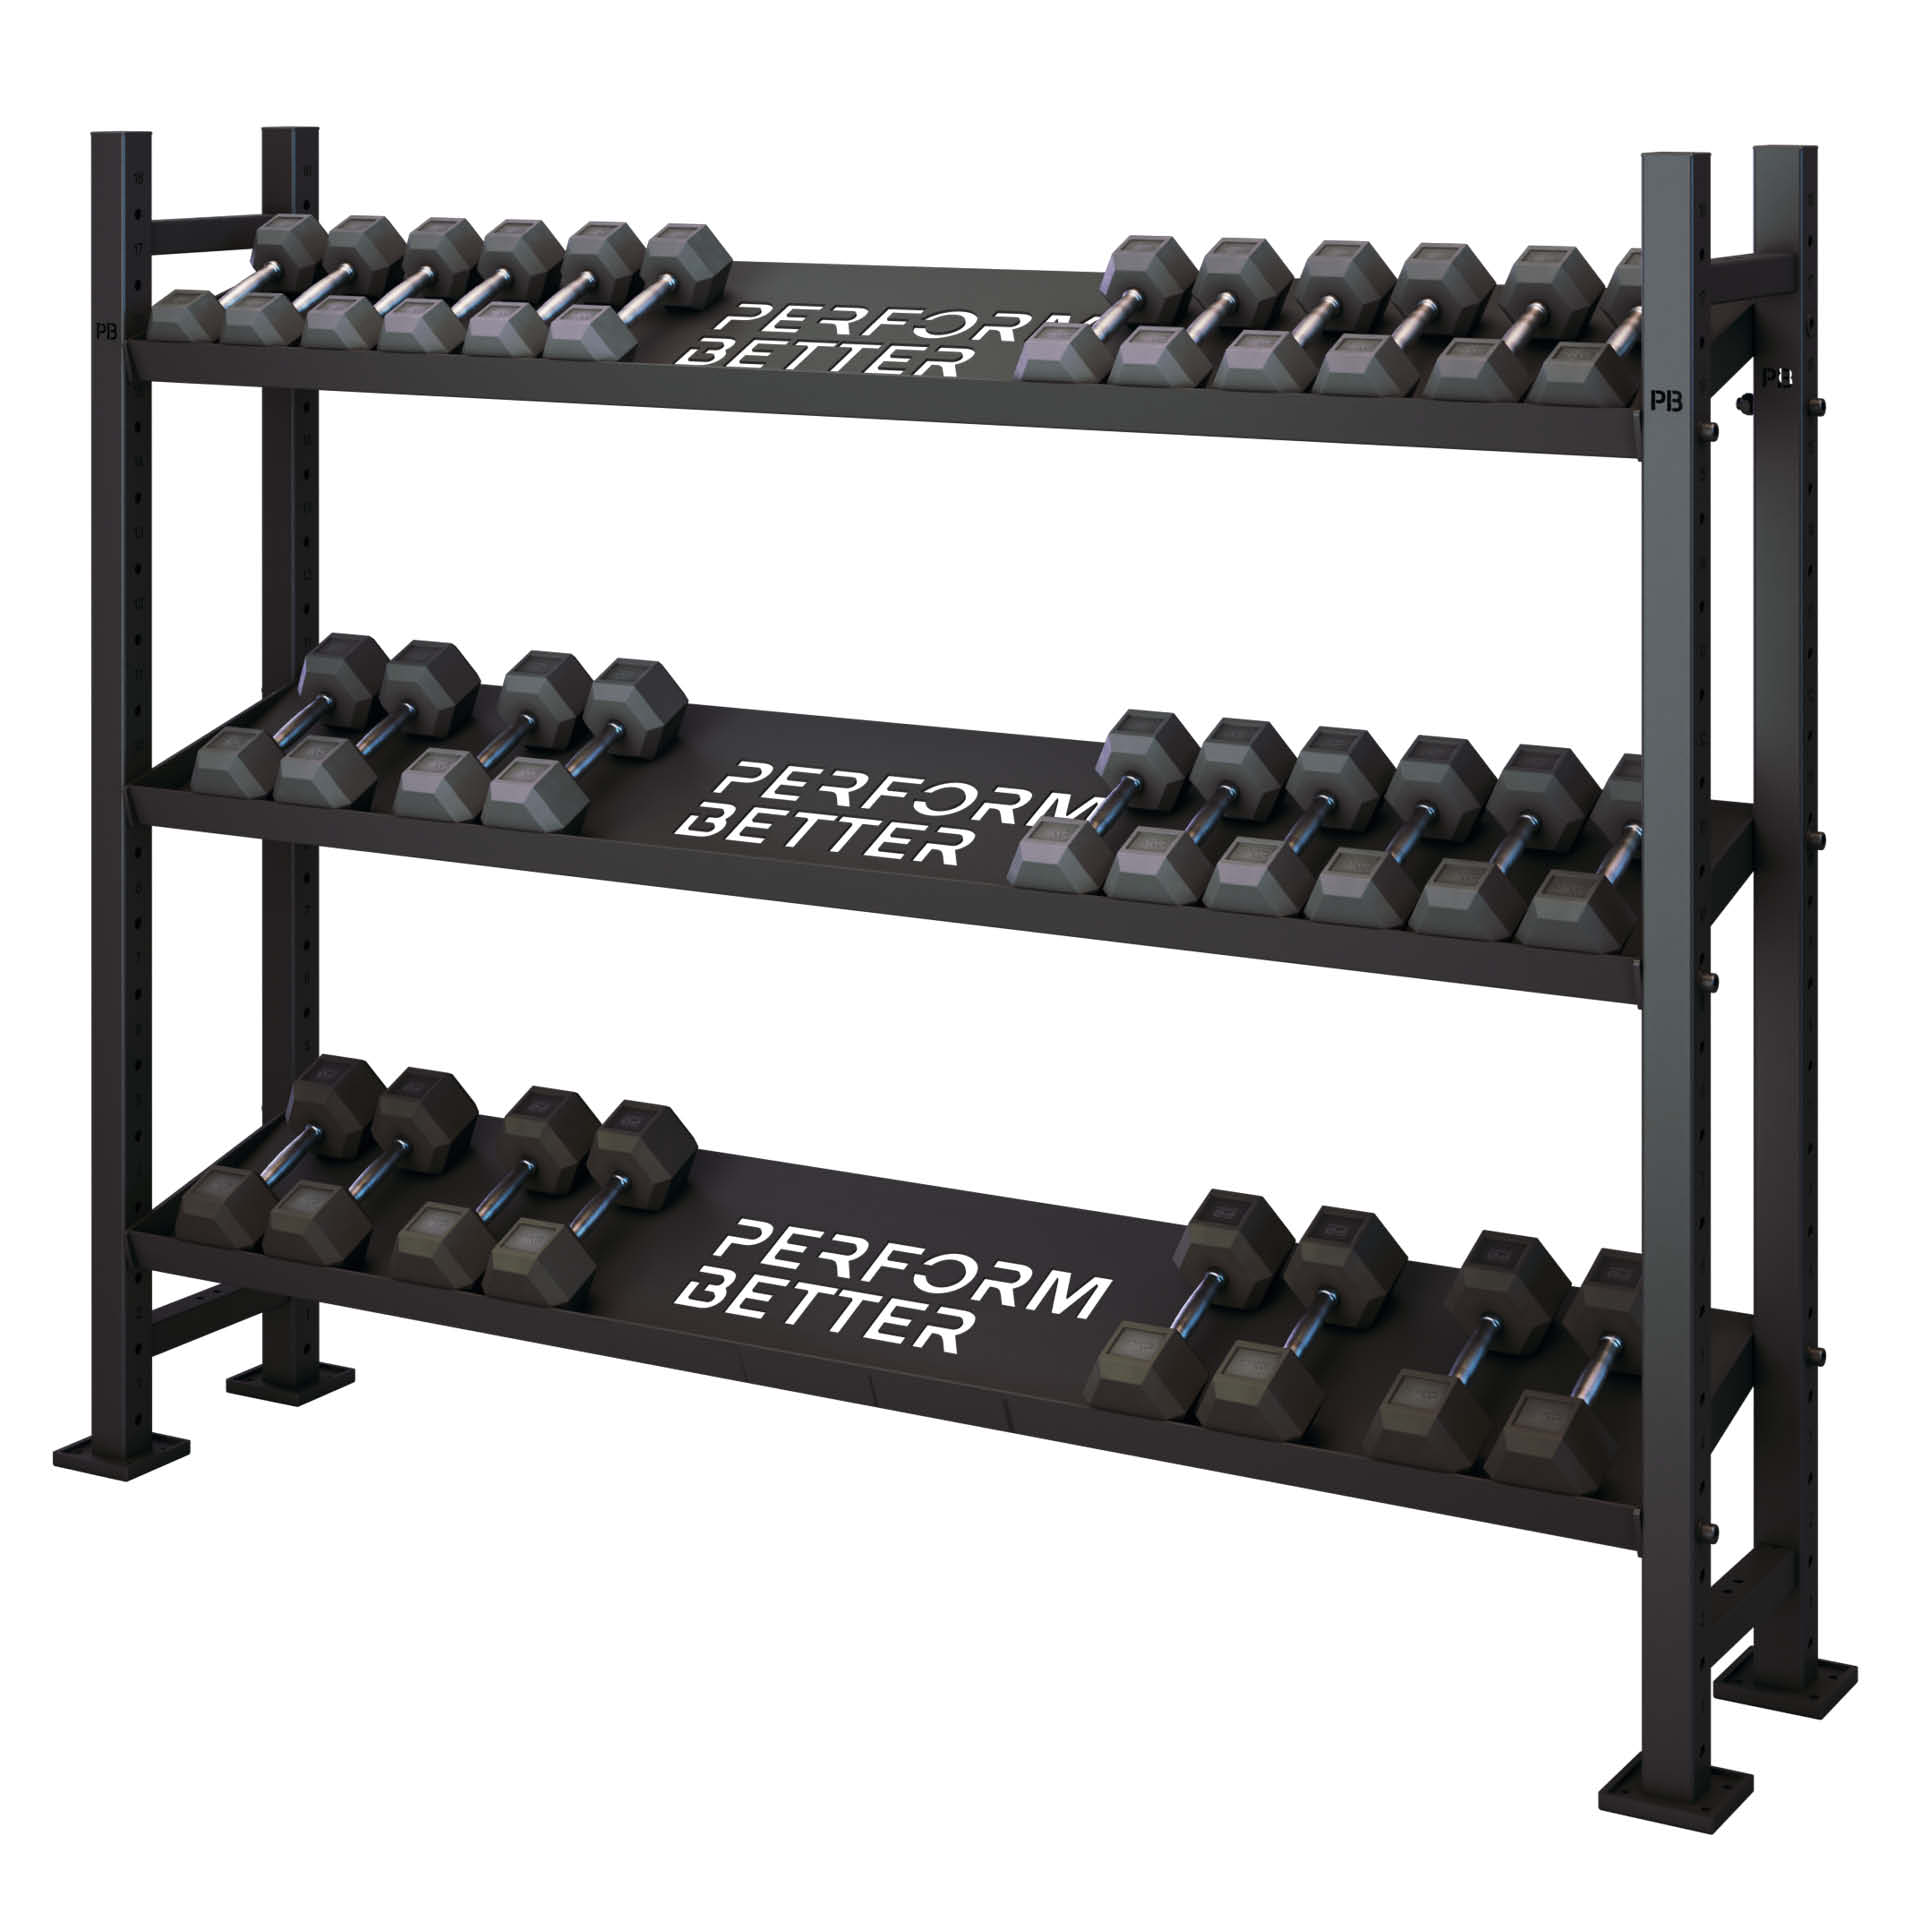 Perform Better Multi Storage Dumbbell rack 3 shelves